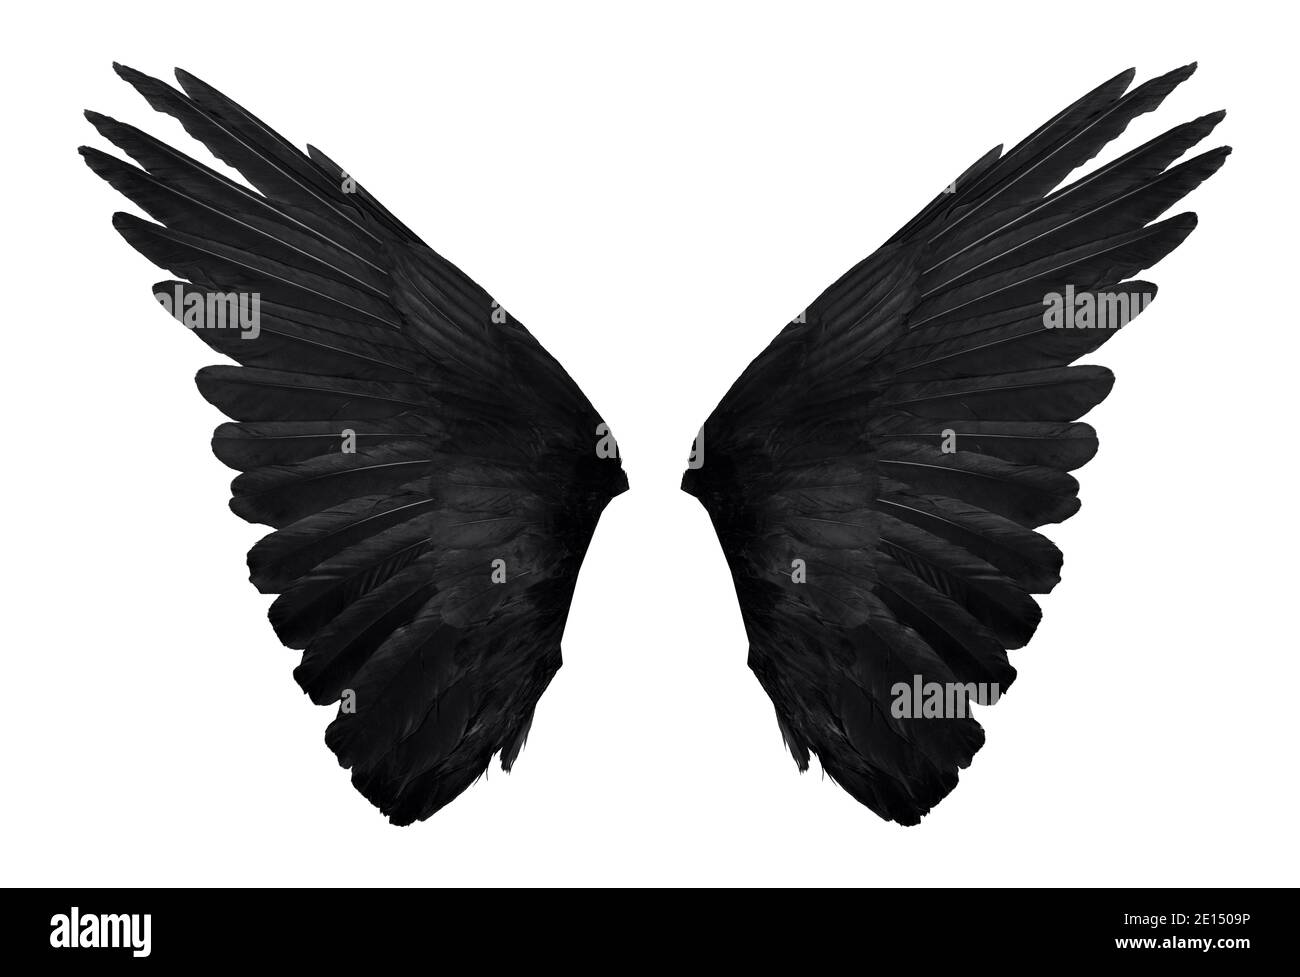 Zwei echte schwarze Engelsflügel mit großen Federn isoliert auf weißem  Hintergrund, Nahaufnahme Stockfotografie - Alamy